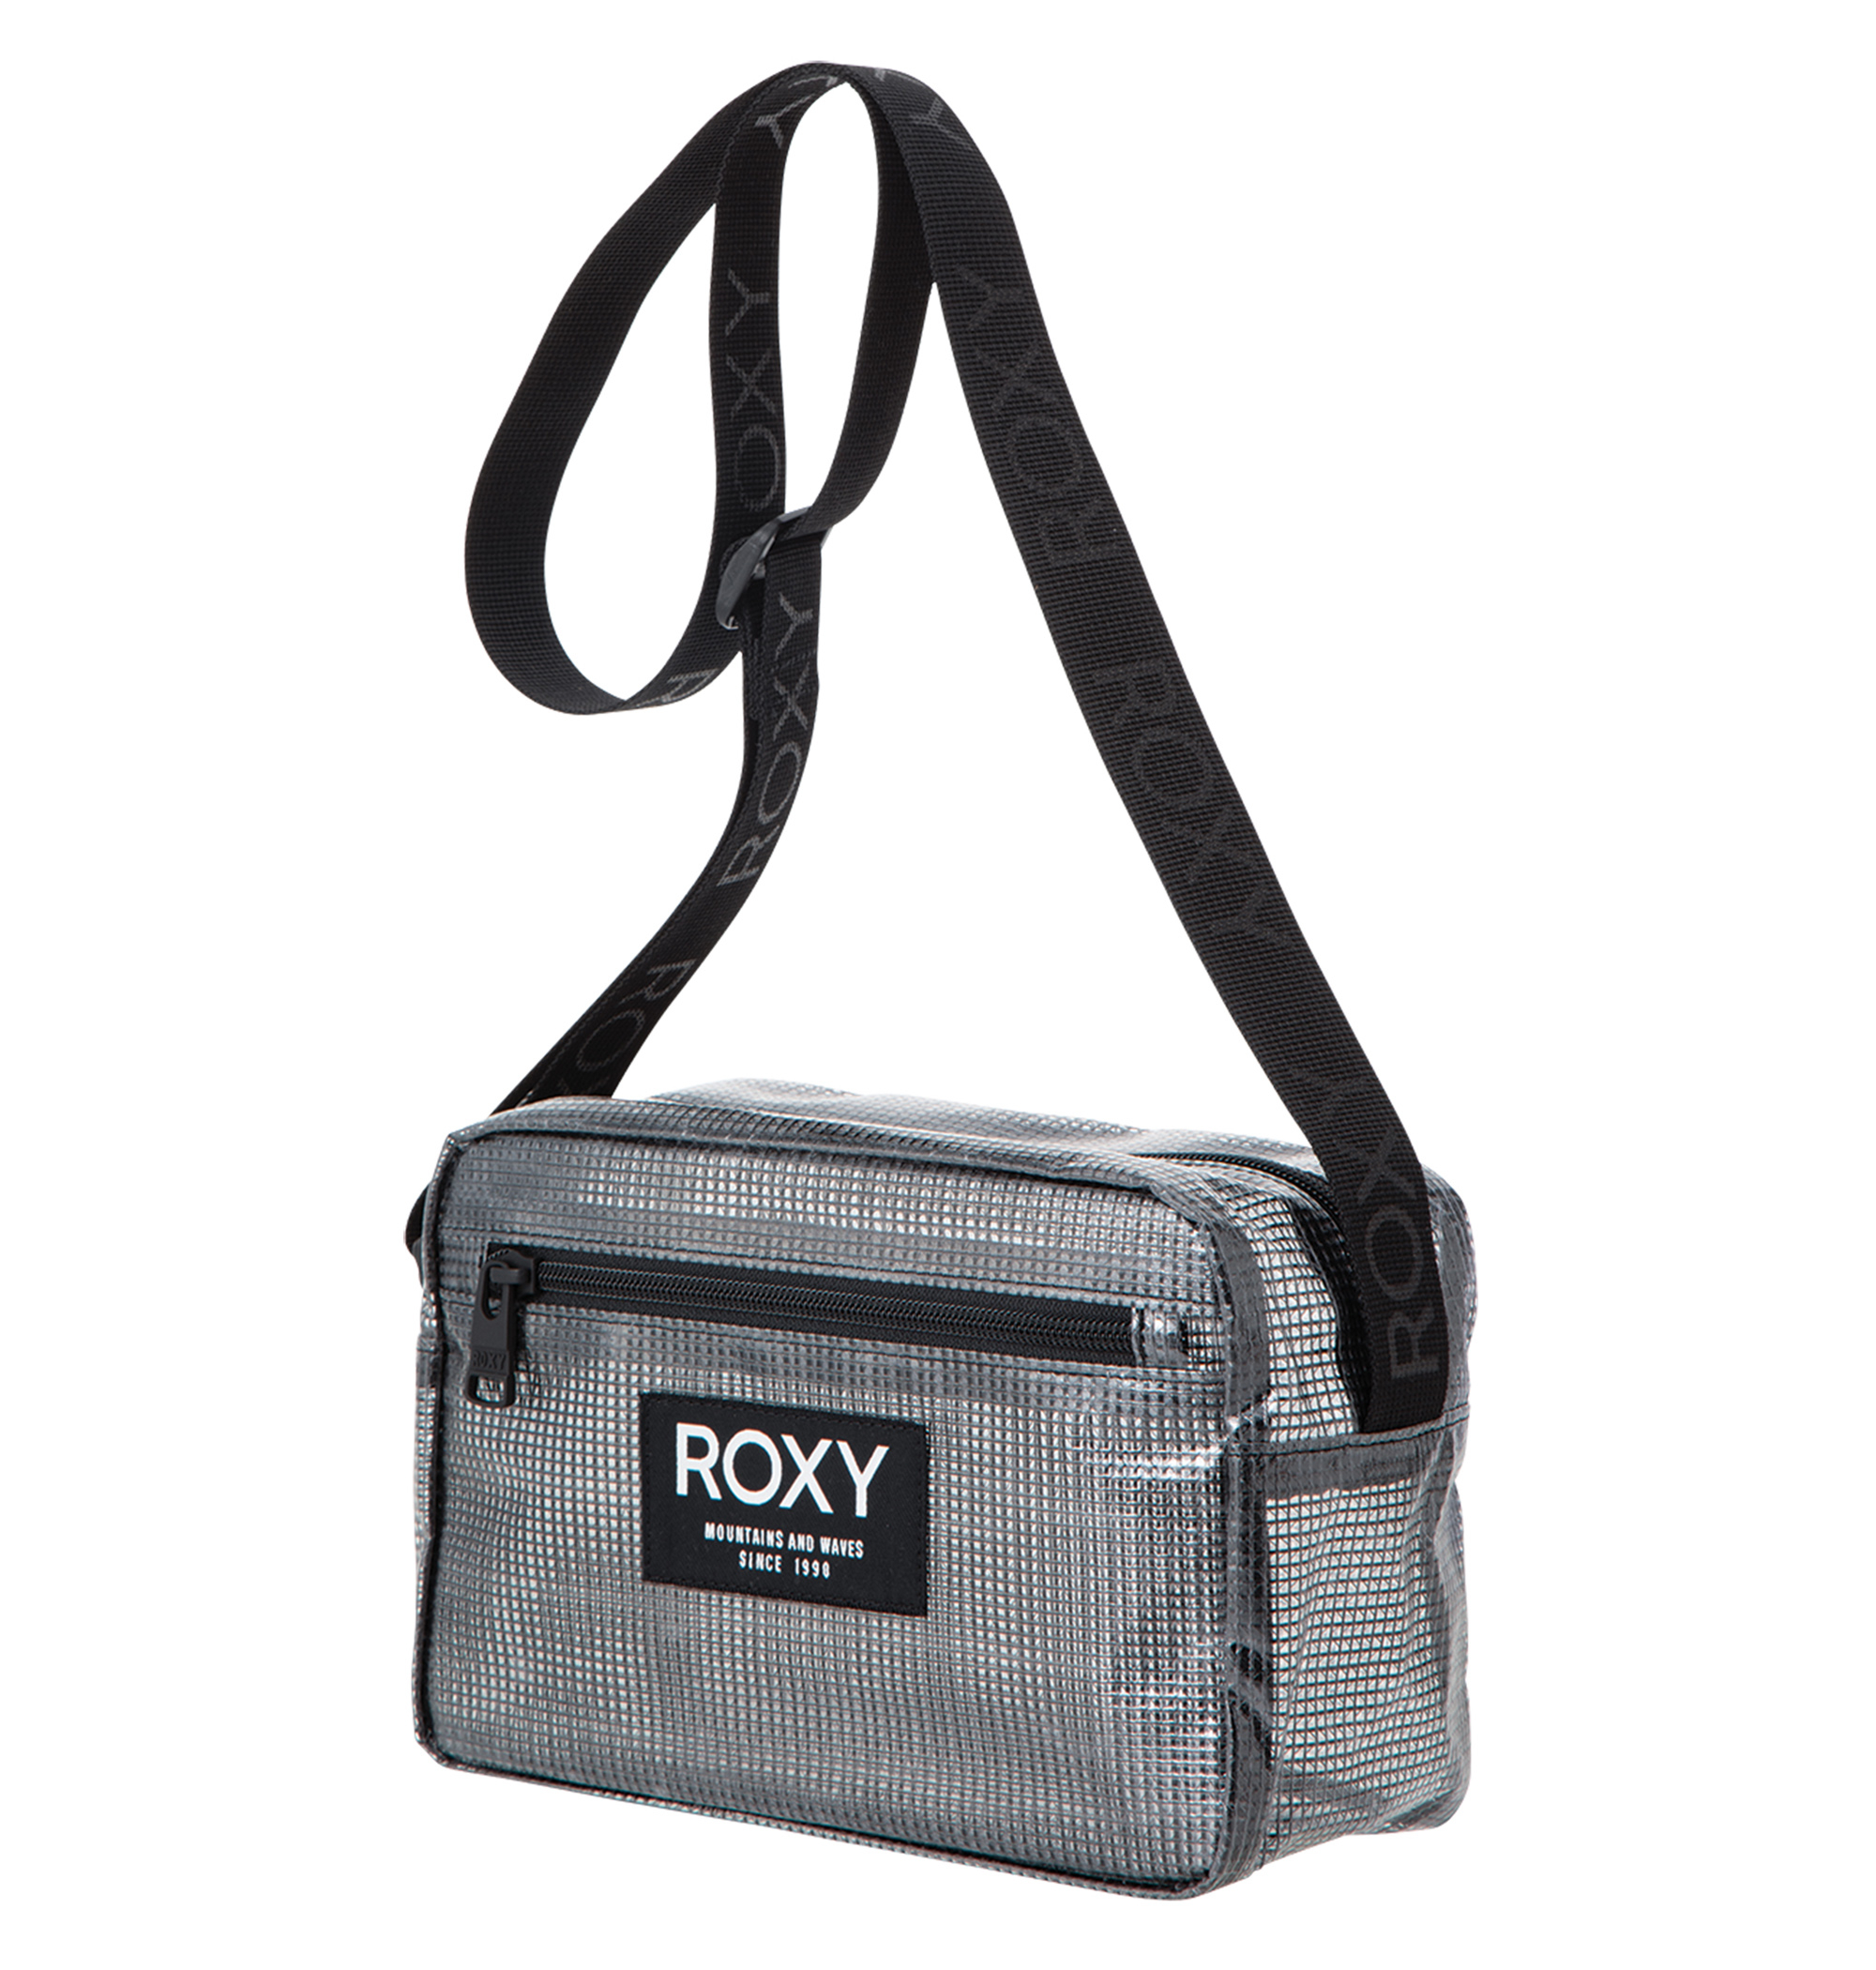 ＜Roxy＞IN THE ACT 透明感が夏らしいボックス型のミニバッグが登場